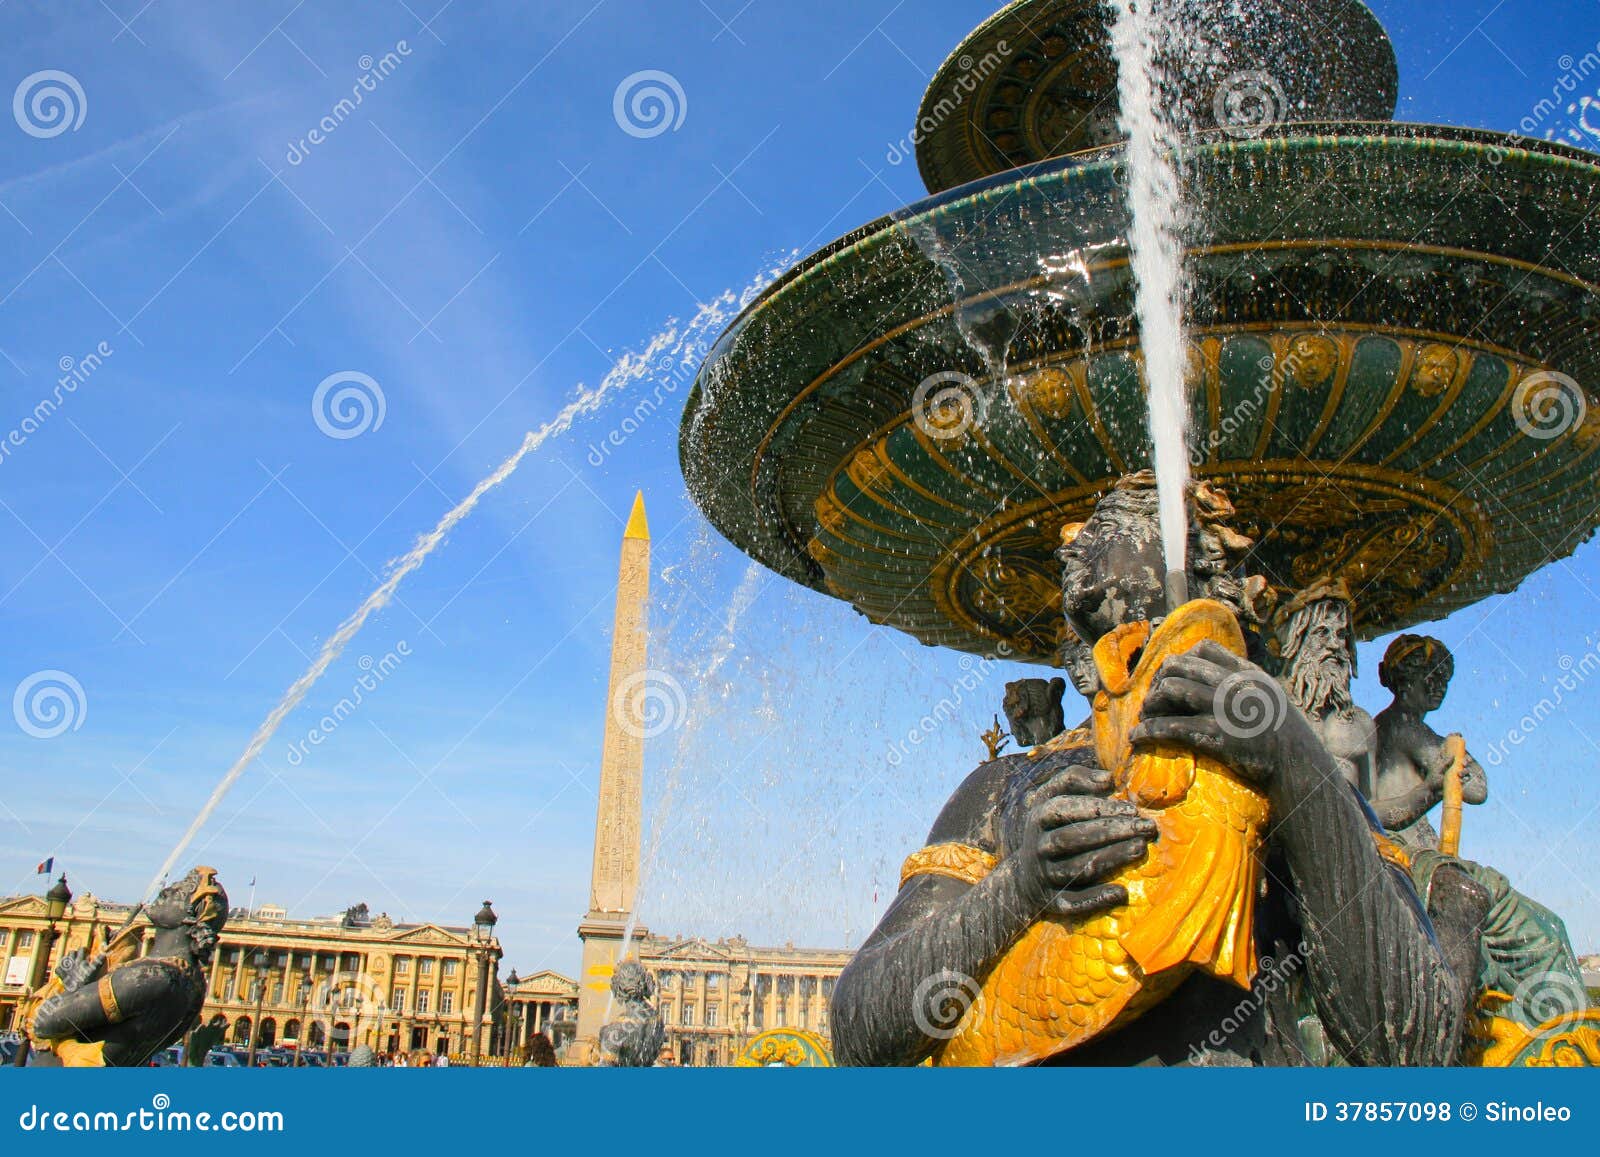 fontaine des mers at place de la concorde in paris